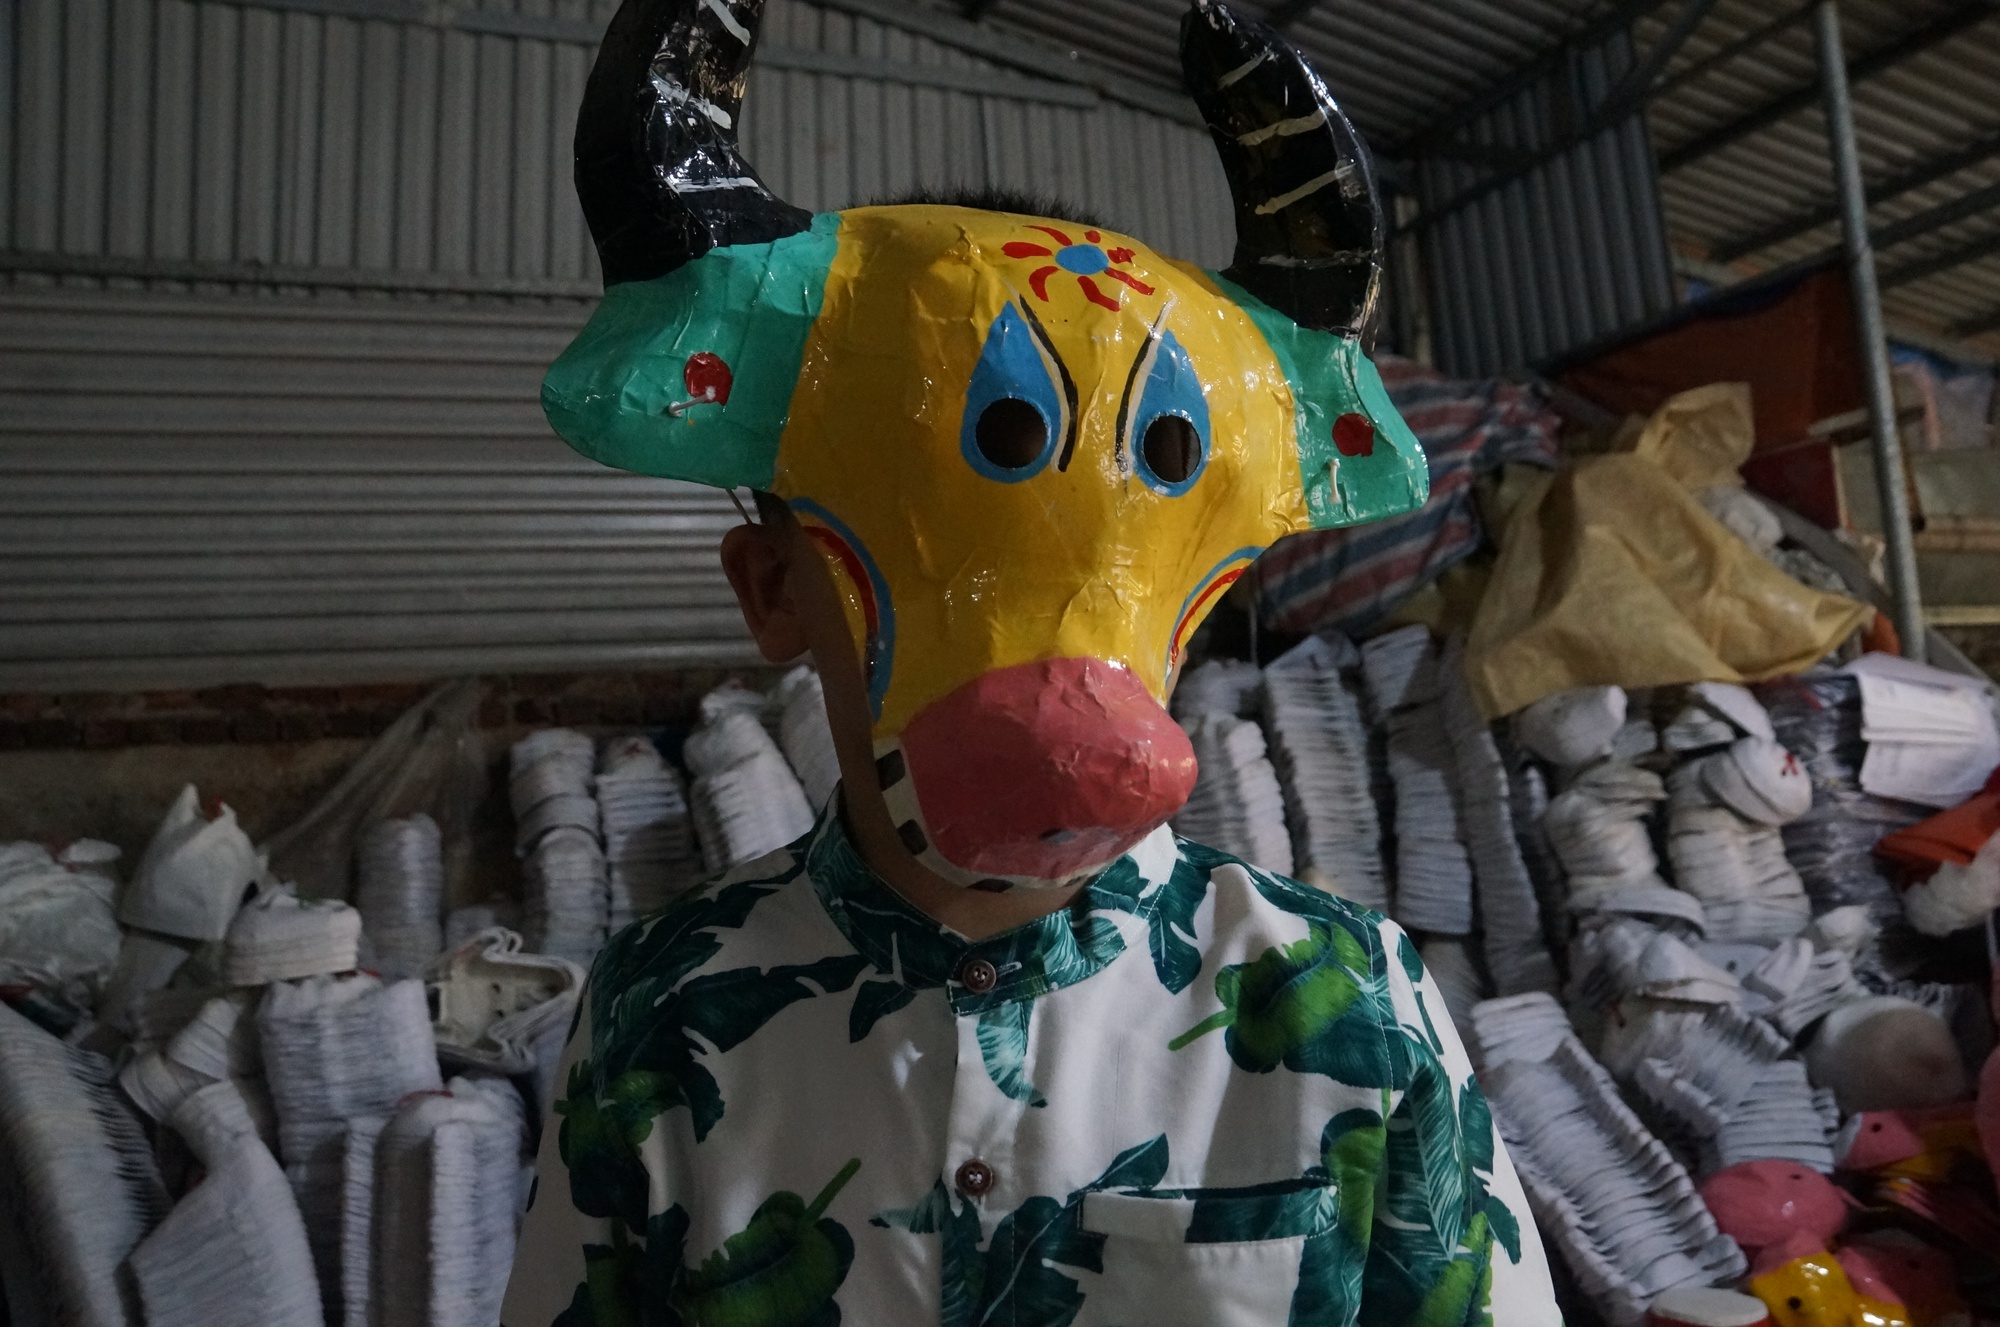 Mục sở thị nơi chế tạo hàng nghìn chiếc mặt nạ đồ chơi trung thu - Ảnh 9.